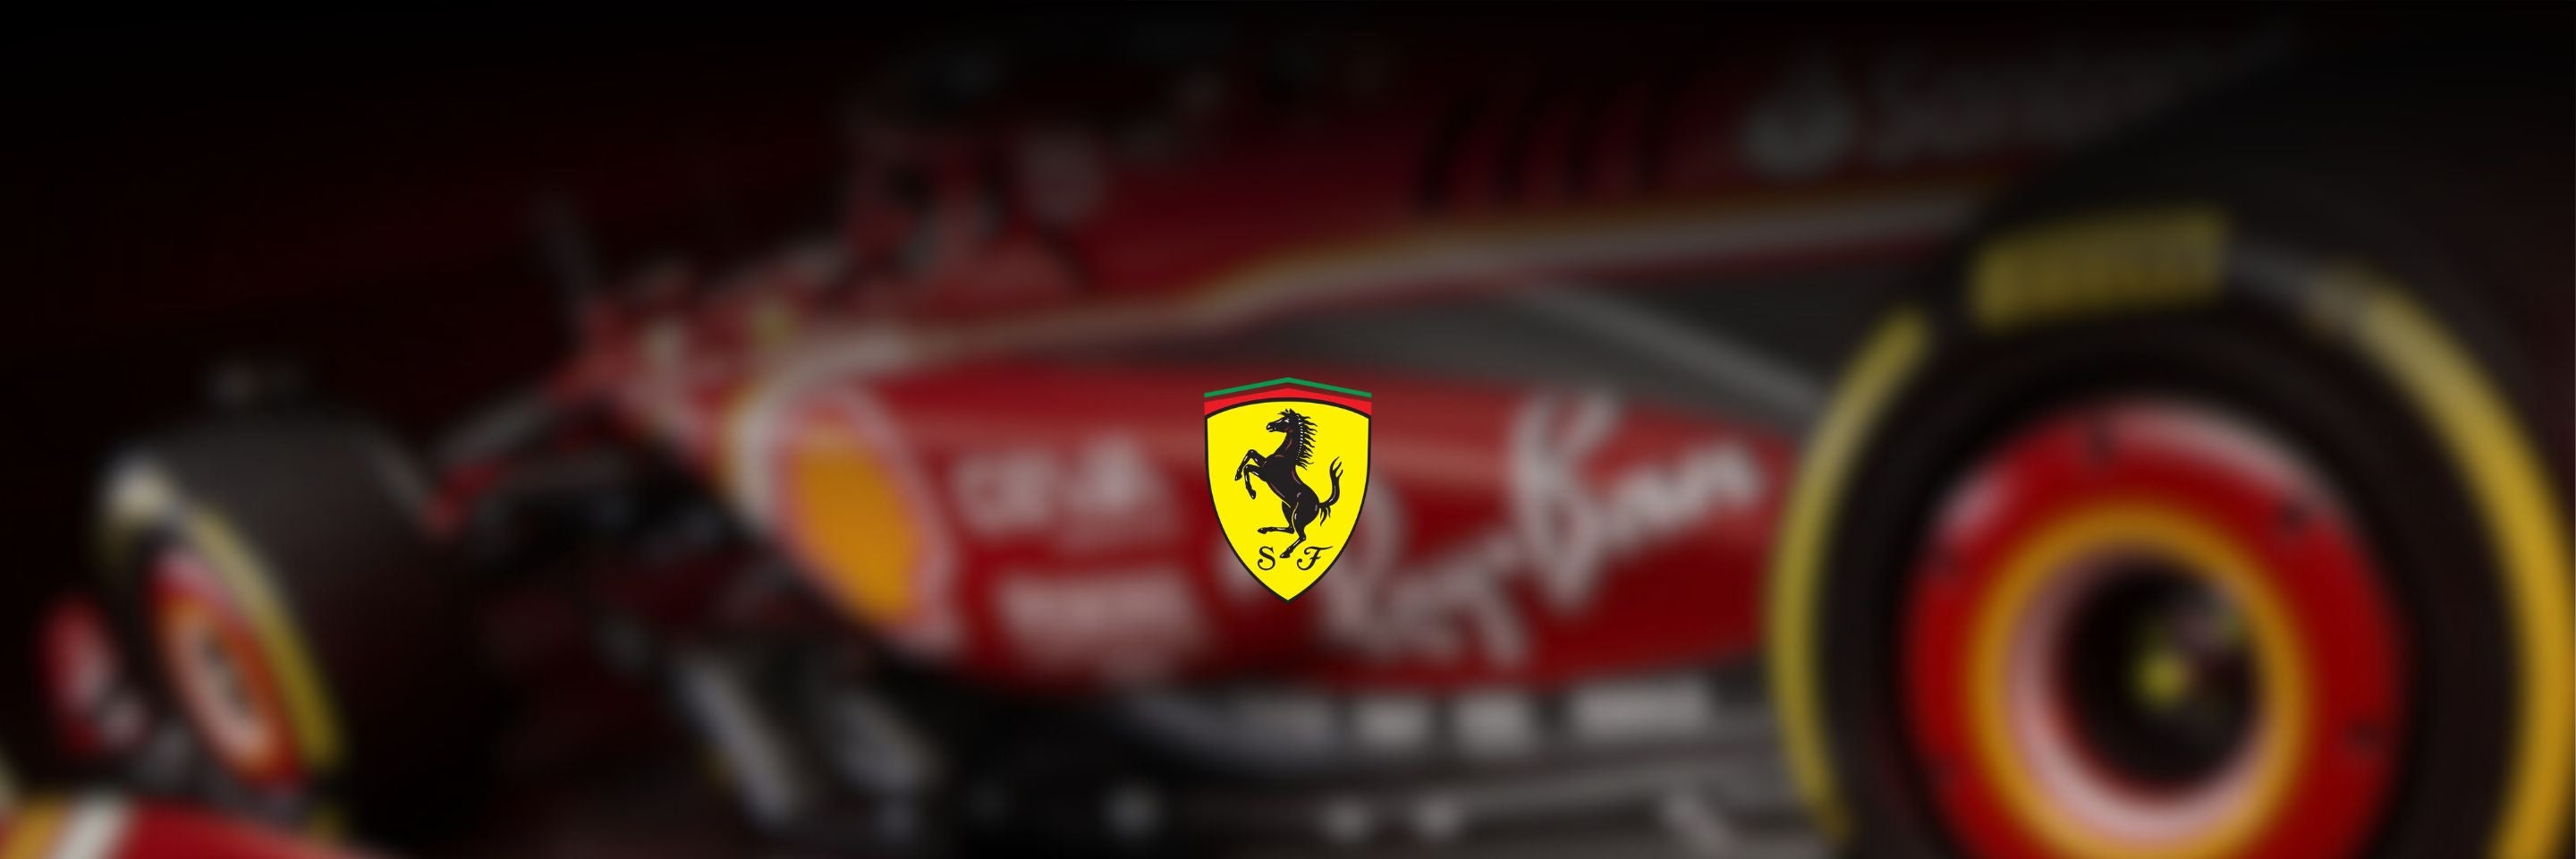 Scuderia Ferrari - F1 and Motorpsort Offficial Merchandise - Fueler store